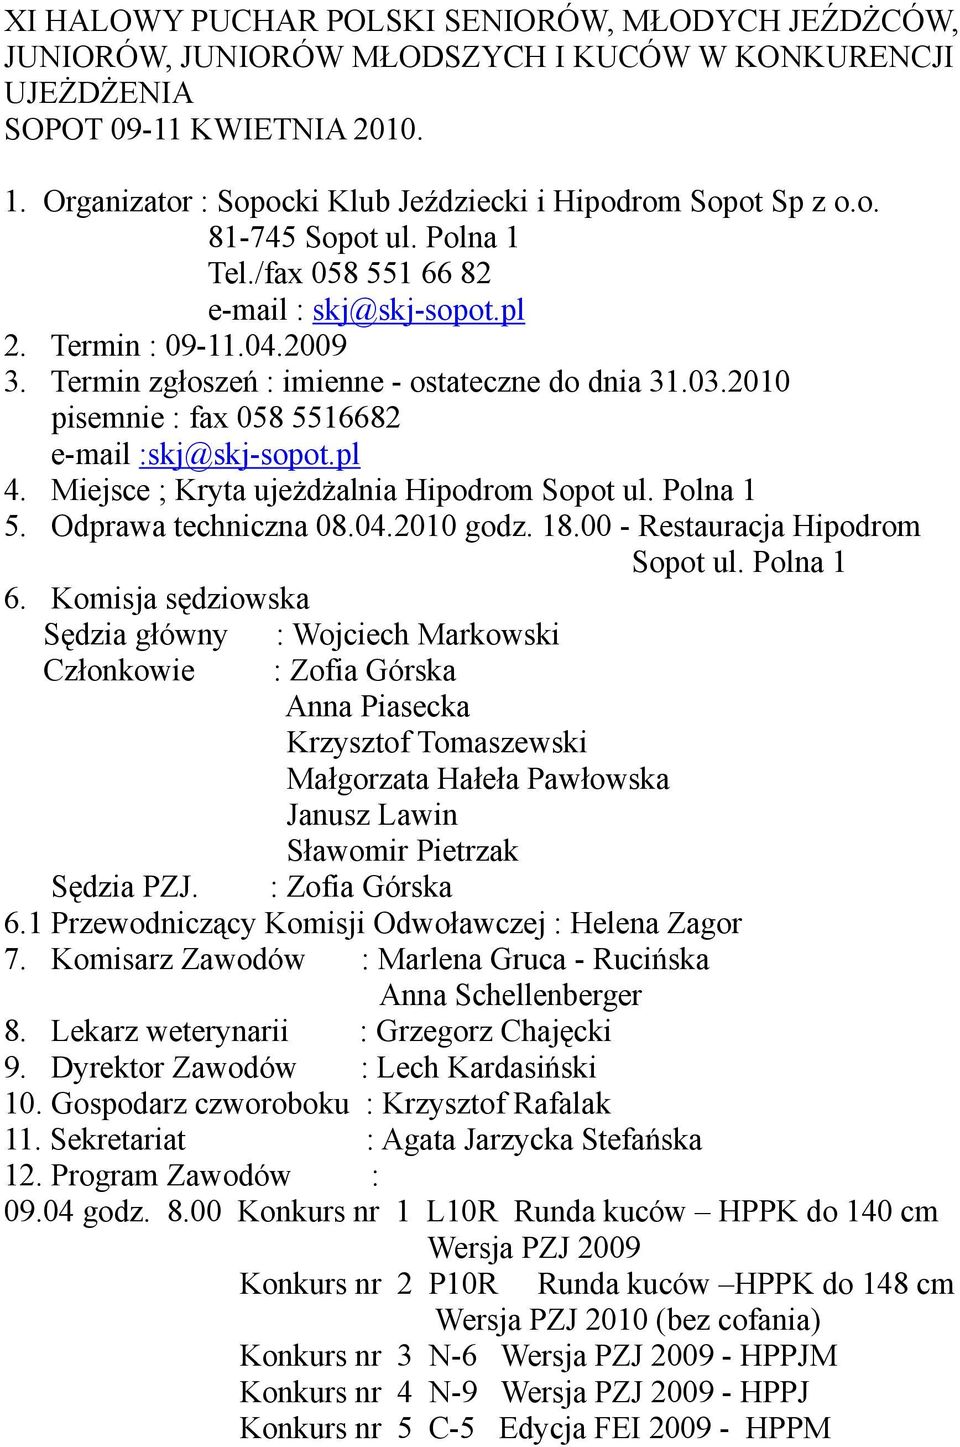 Termin zgłoszeń : imienne - ostateczne do dnia 31.03.2010 pisemnie : fax 058 5516682 e-mail :skj@skj-sopot.pl 4. Miejsce ; Kryta ujeżdżalnia Hipodrom Sopot ul. Polna 1 5. Odprawa techniczna 08.04.